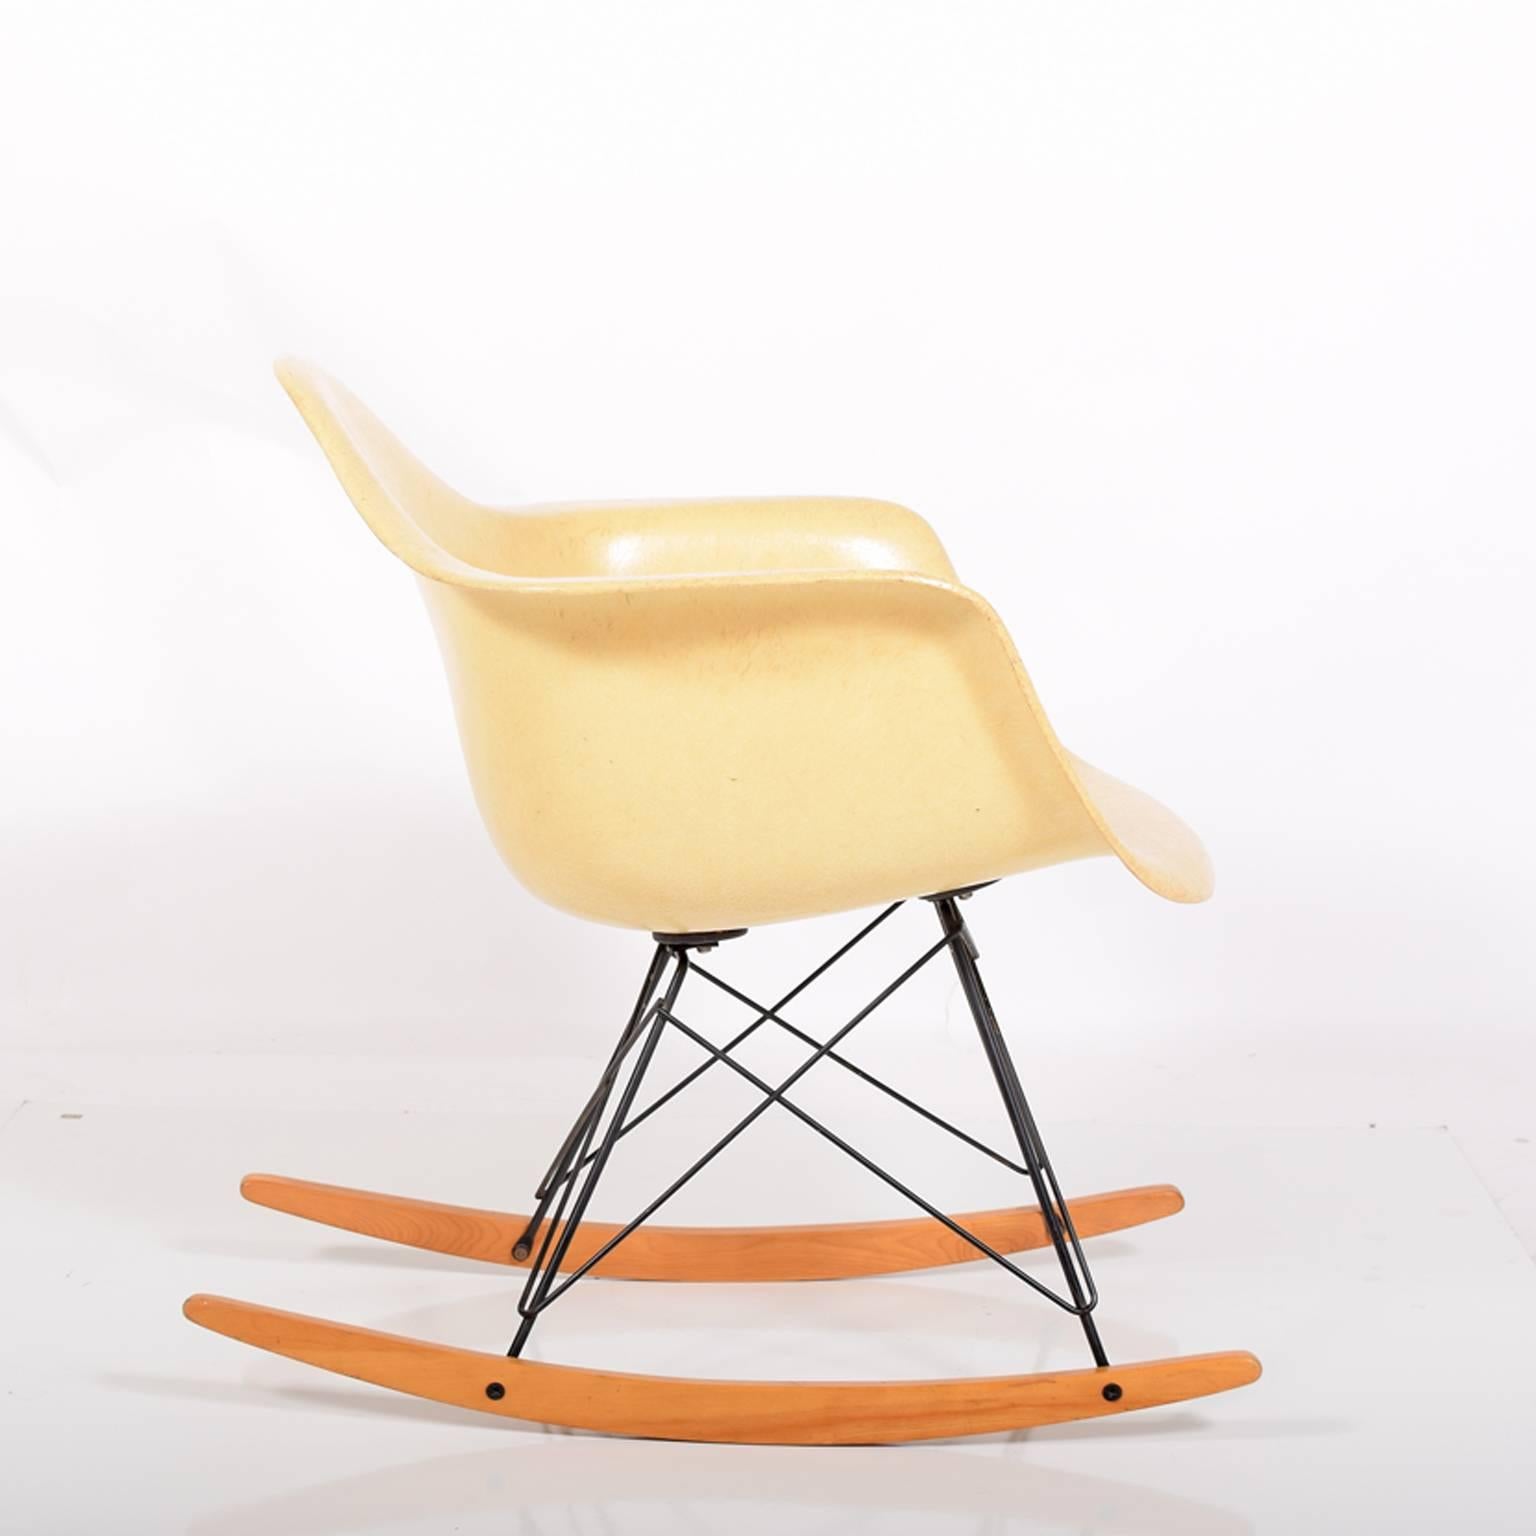 Originale Glasfaserarmierung auf schwarzem Drahtsockel mit Birkenholzstreben und großen Gummilagern. Auf dem Boden markiert, Herman Miller. Der Stuhl stand die meiste Zeit seines Lebens auf Teppich.